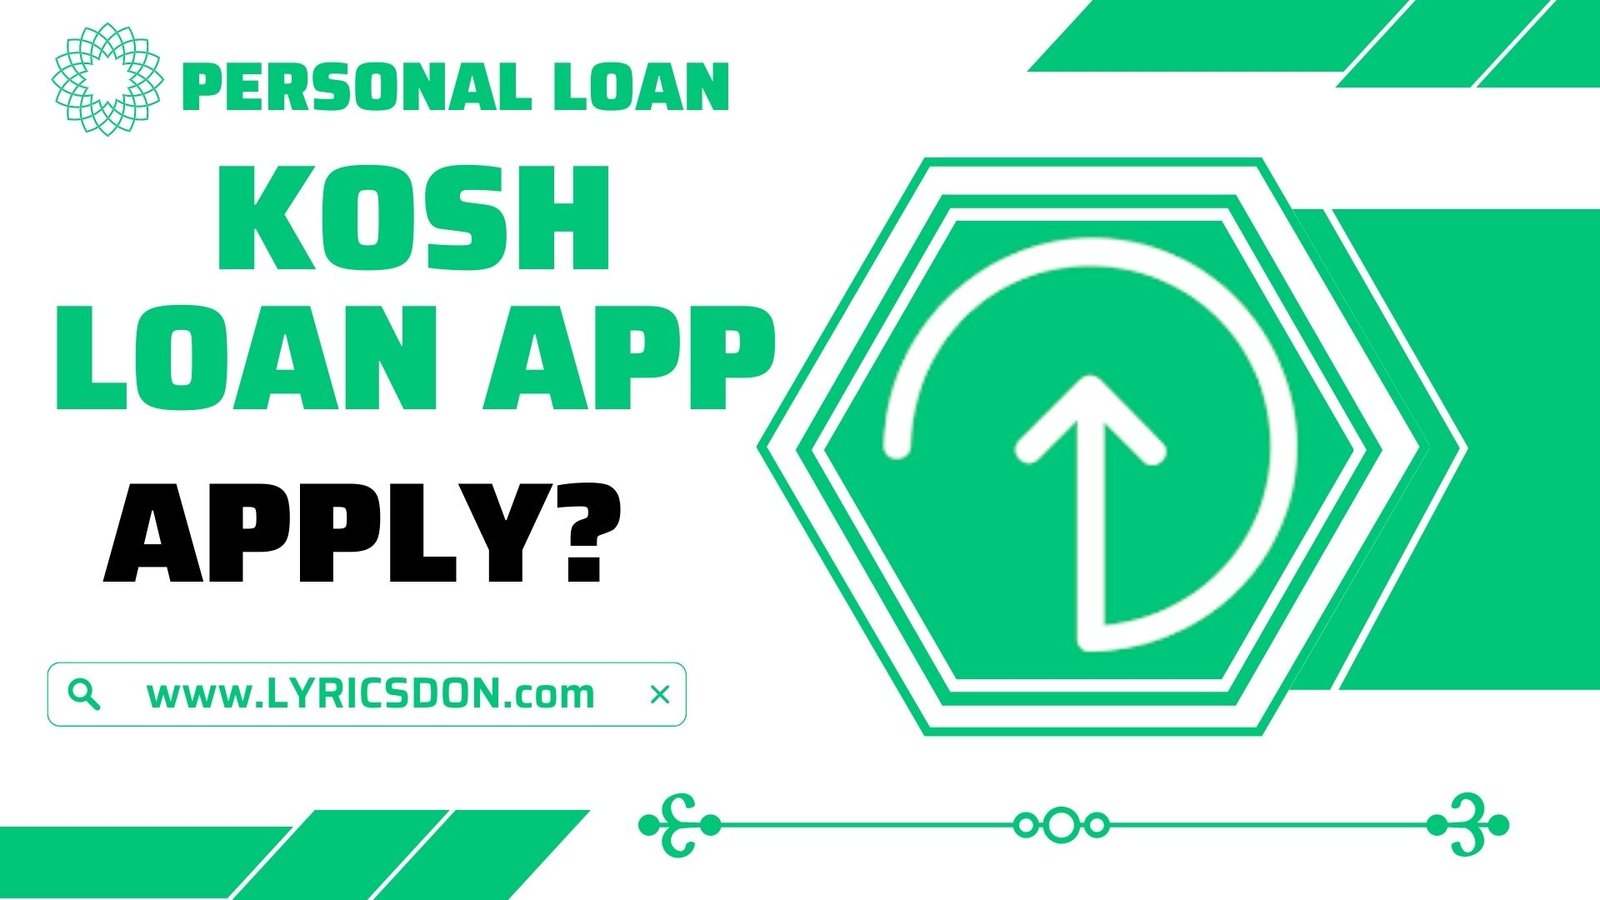 Kosh Loan App से लोन कैसे लें?